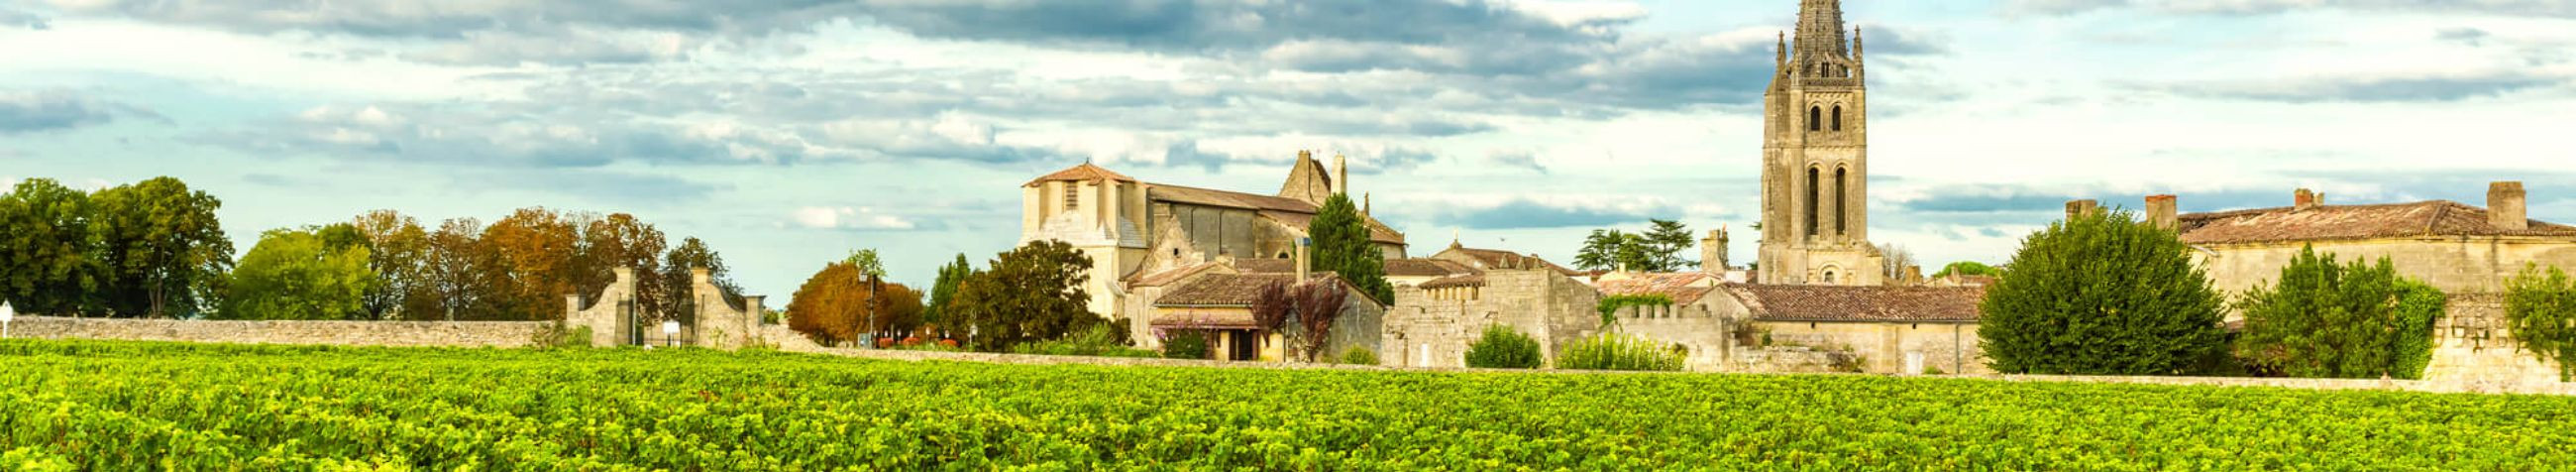 Oleme spetsialiseerunud eksklusiivsete Bordeaux veinide müügile ja investeerimisnõustamisele, viies kliendid lähemale unikaalsetele veinielamustele ja tõhusatele investeeringutele veinimaailmas.